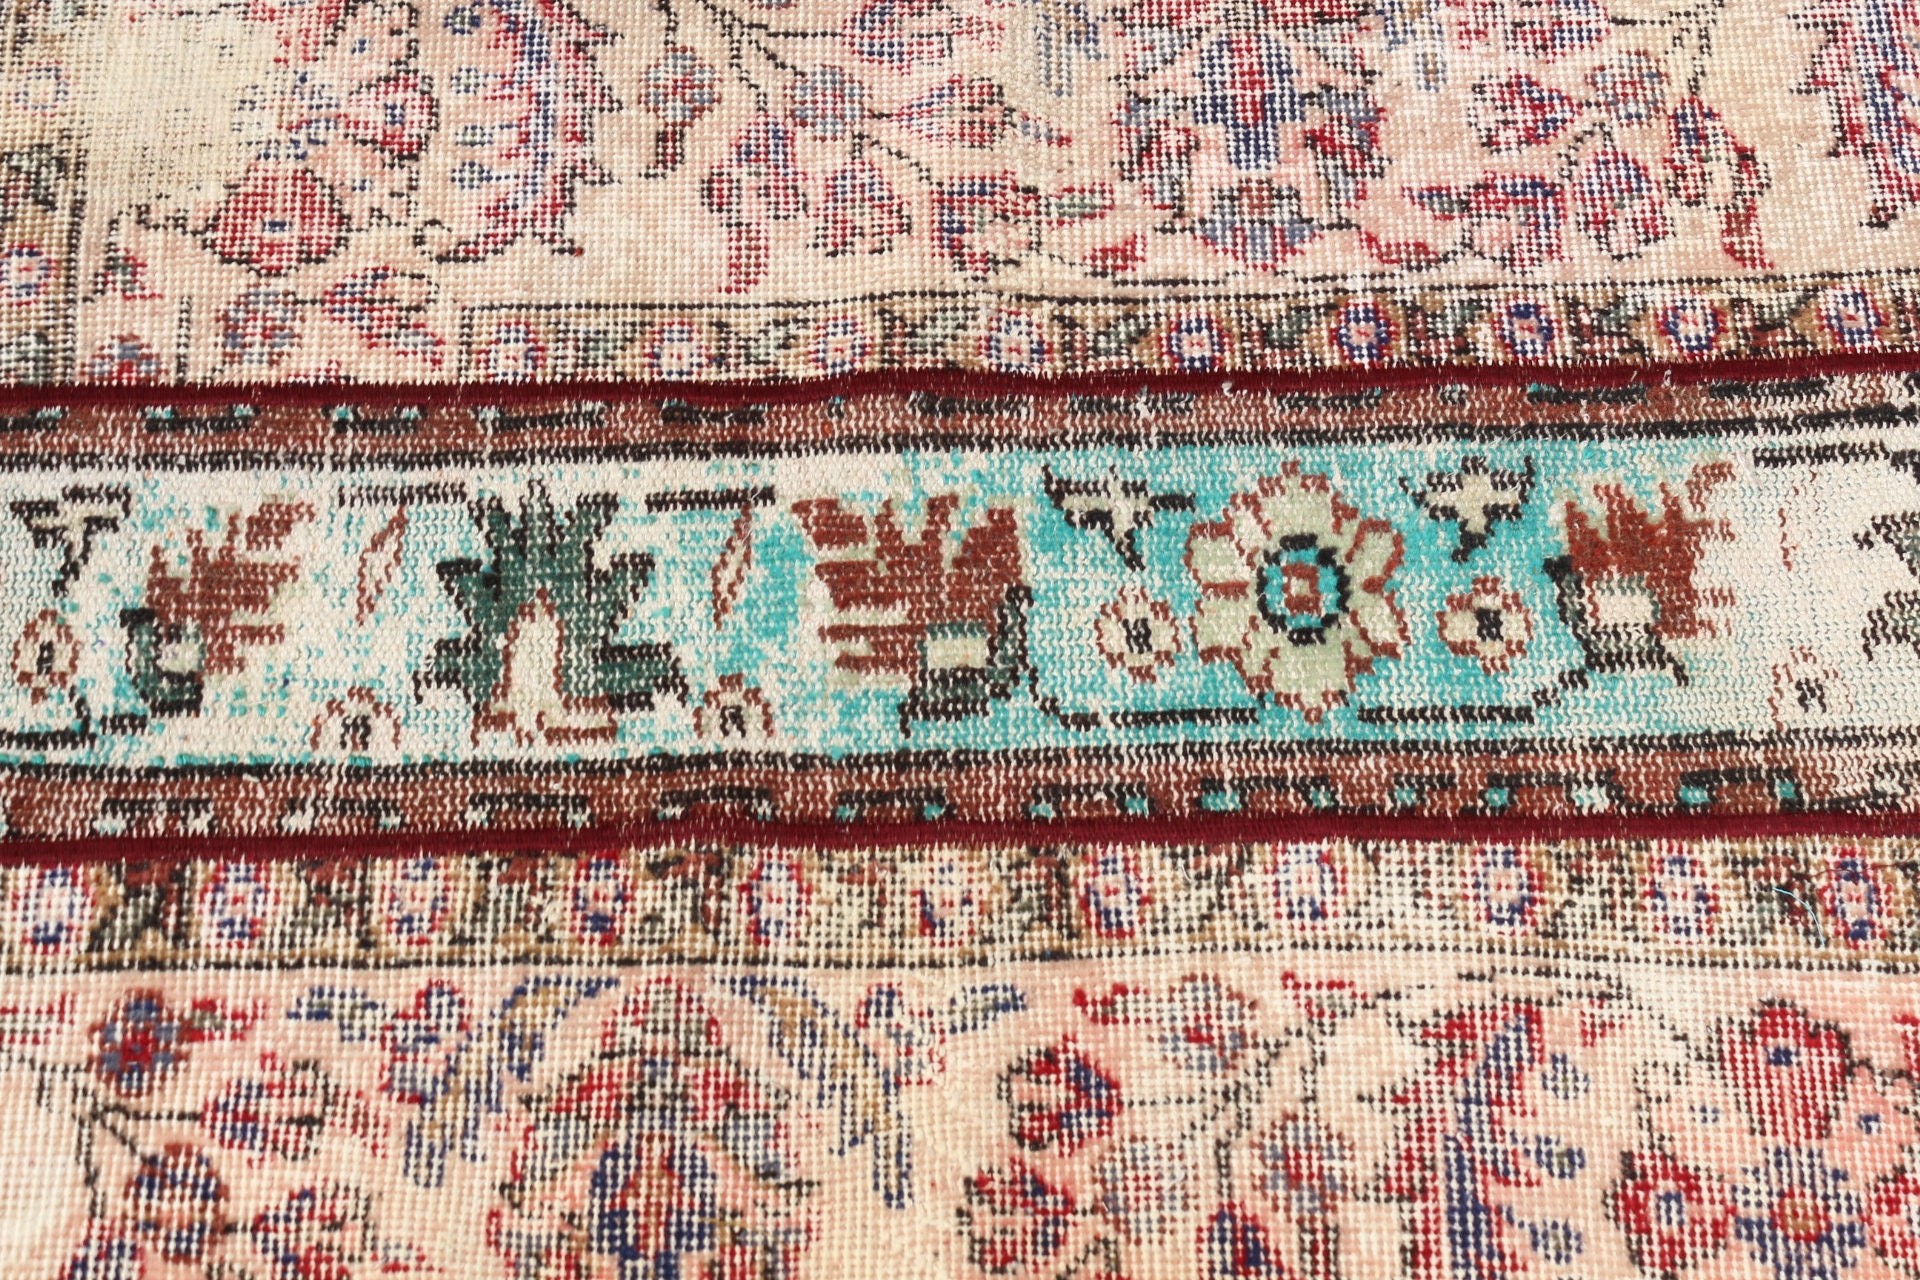 Orange Floor Rug, Nursery Rugs, Turkish Rugs, Kitchen Rug, Vintage Rug, Nomadic Rug, Wall Hanging Rug, Moroccan Rugs, 2.5x3 ft Small Rug